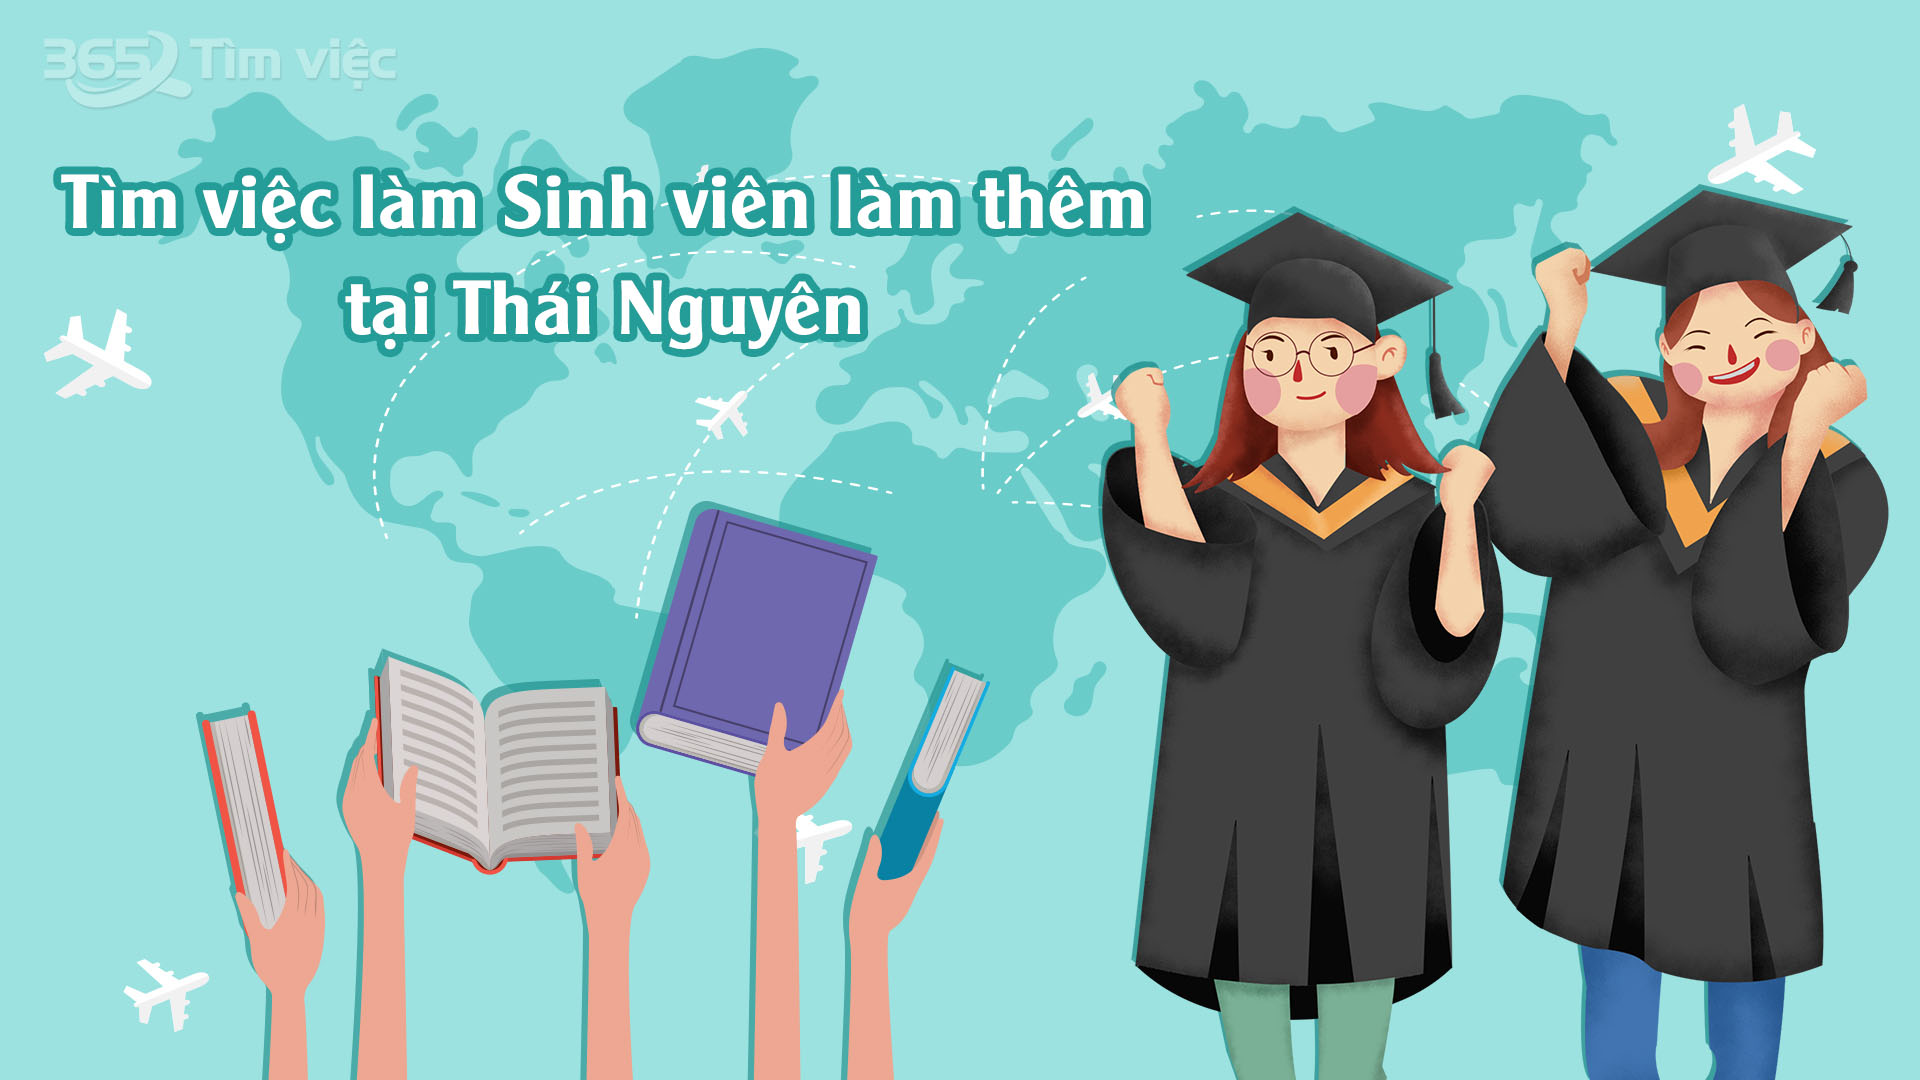 Thực trạng thị trường việc làm sinh viên làm thêm tại Thái Nguyên hiện nay